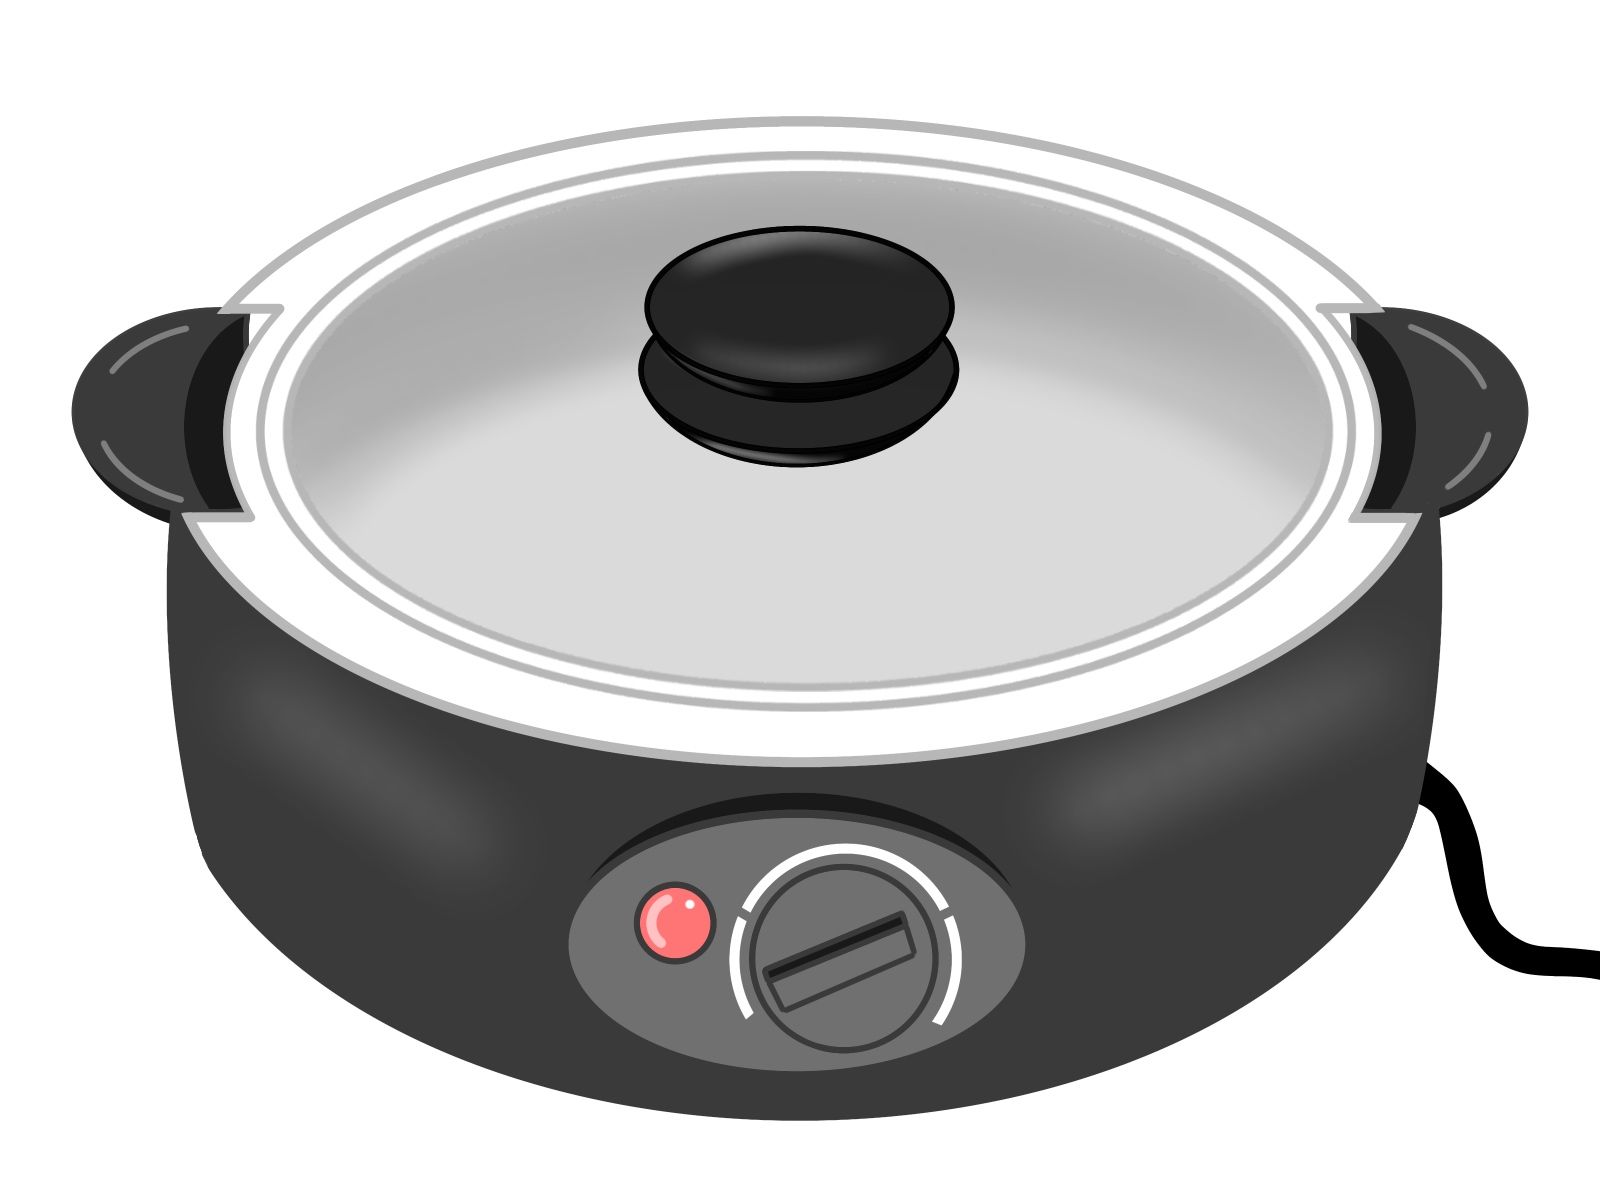 一人用の電気グリル鍋が便利な件 | 『 単身部ログ.com 』